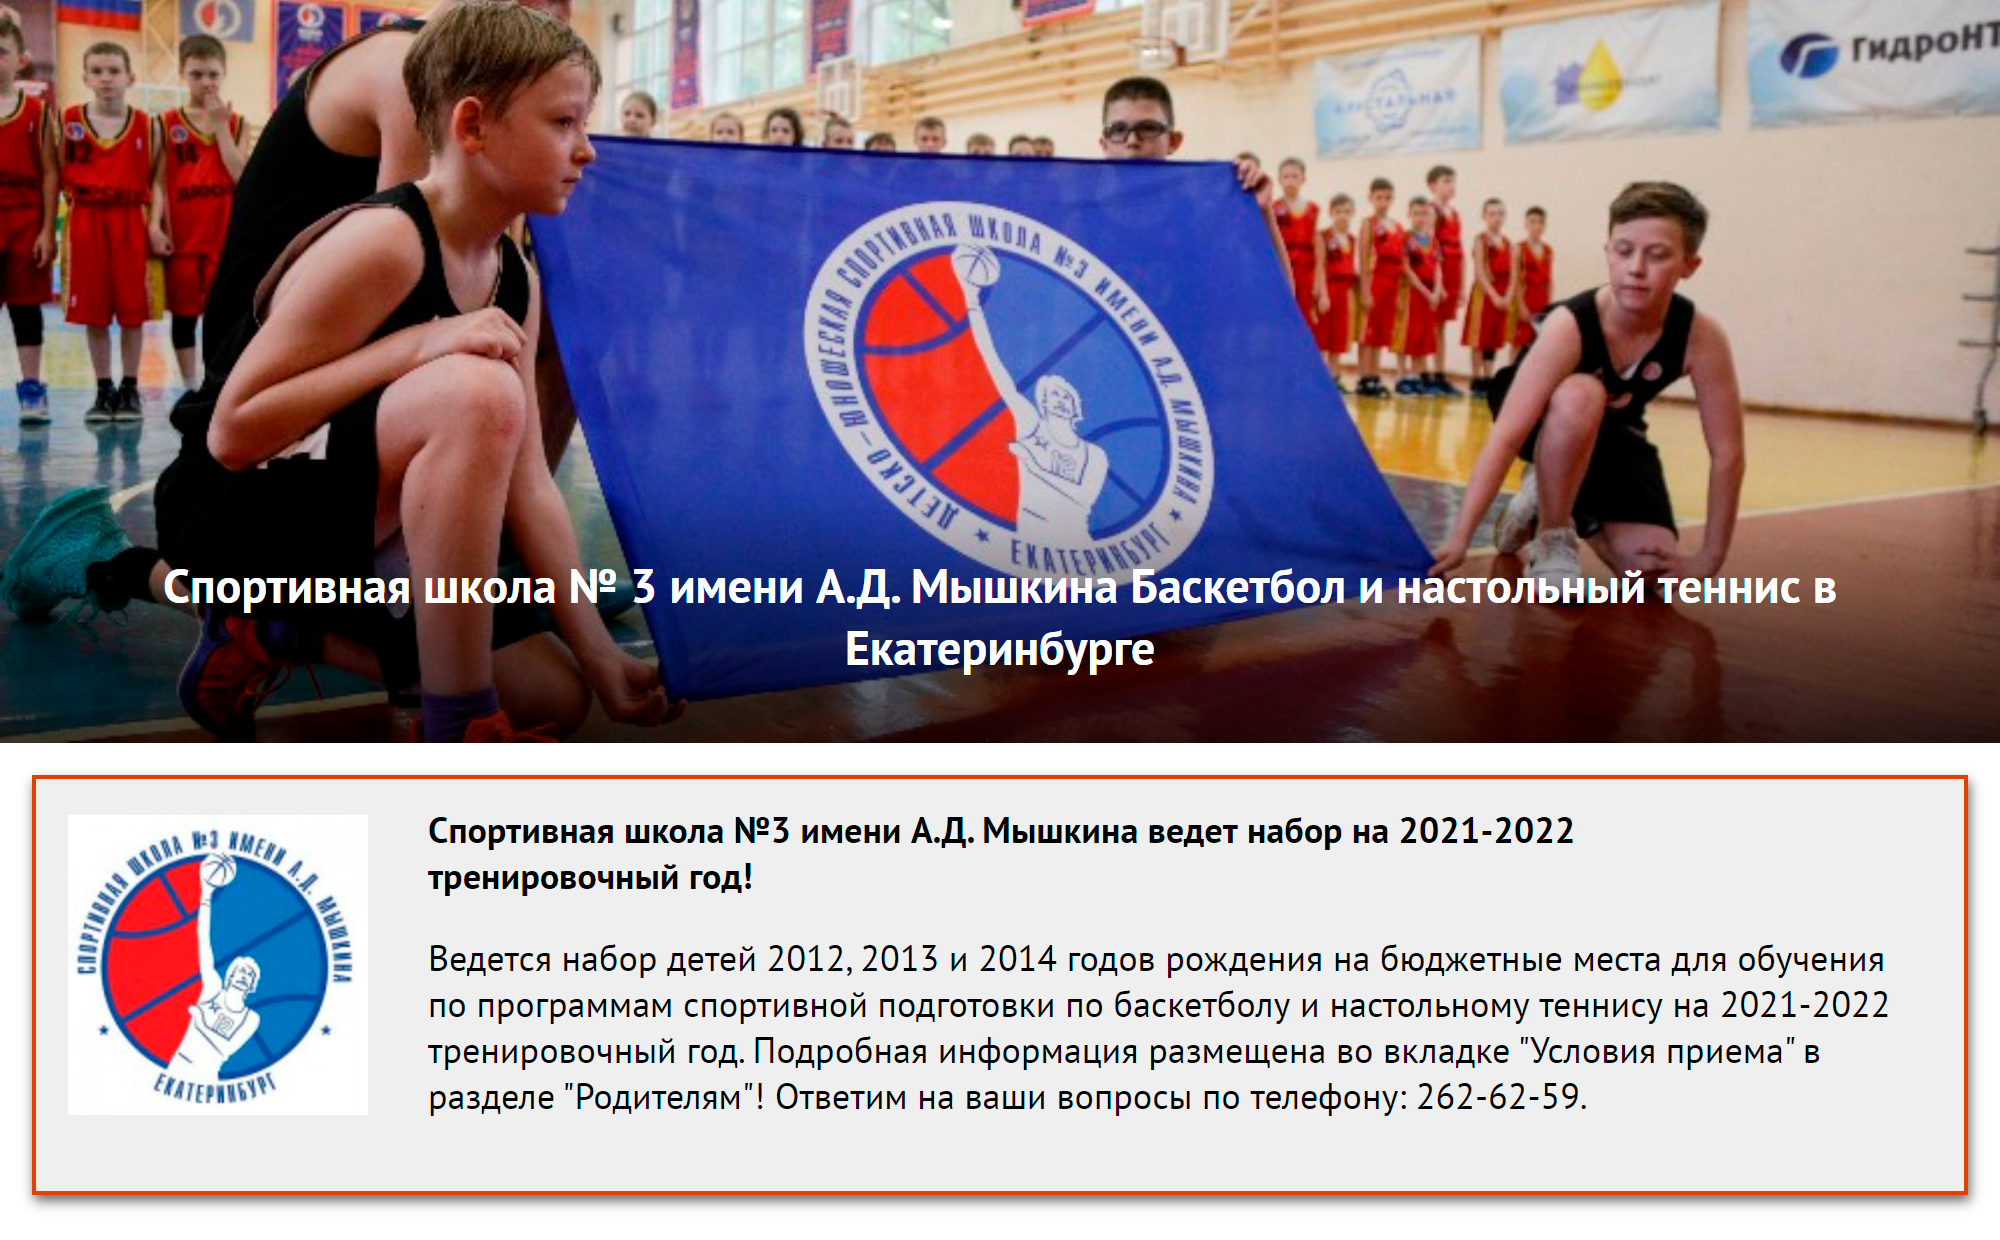 Спортивная школа в Екатеринбурге почти все лето принимает документы в секцию баскетбола